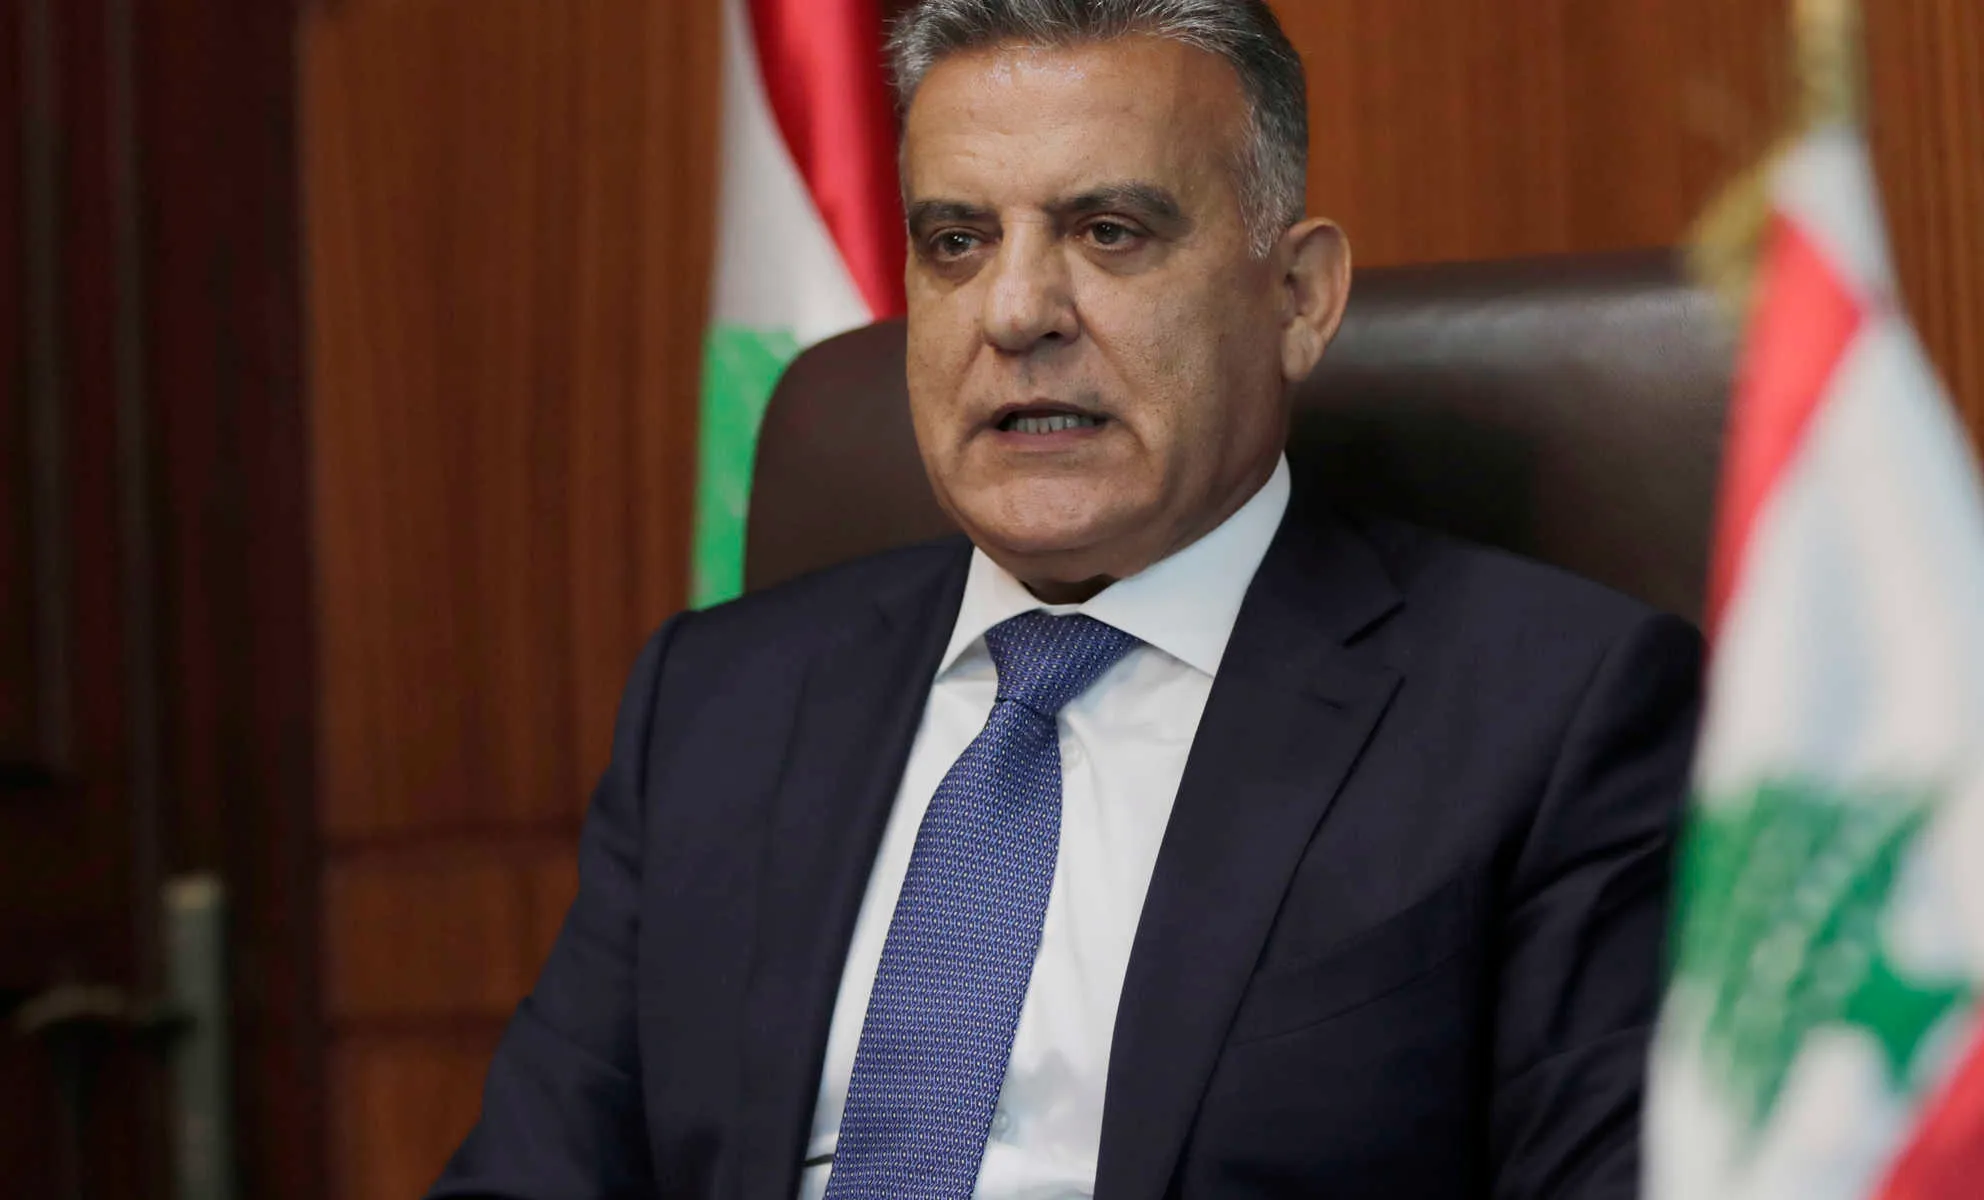 مدير الأمن العام اللبناني ينتقد "اللامبالاة العربية في معالجة الملف السوري"